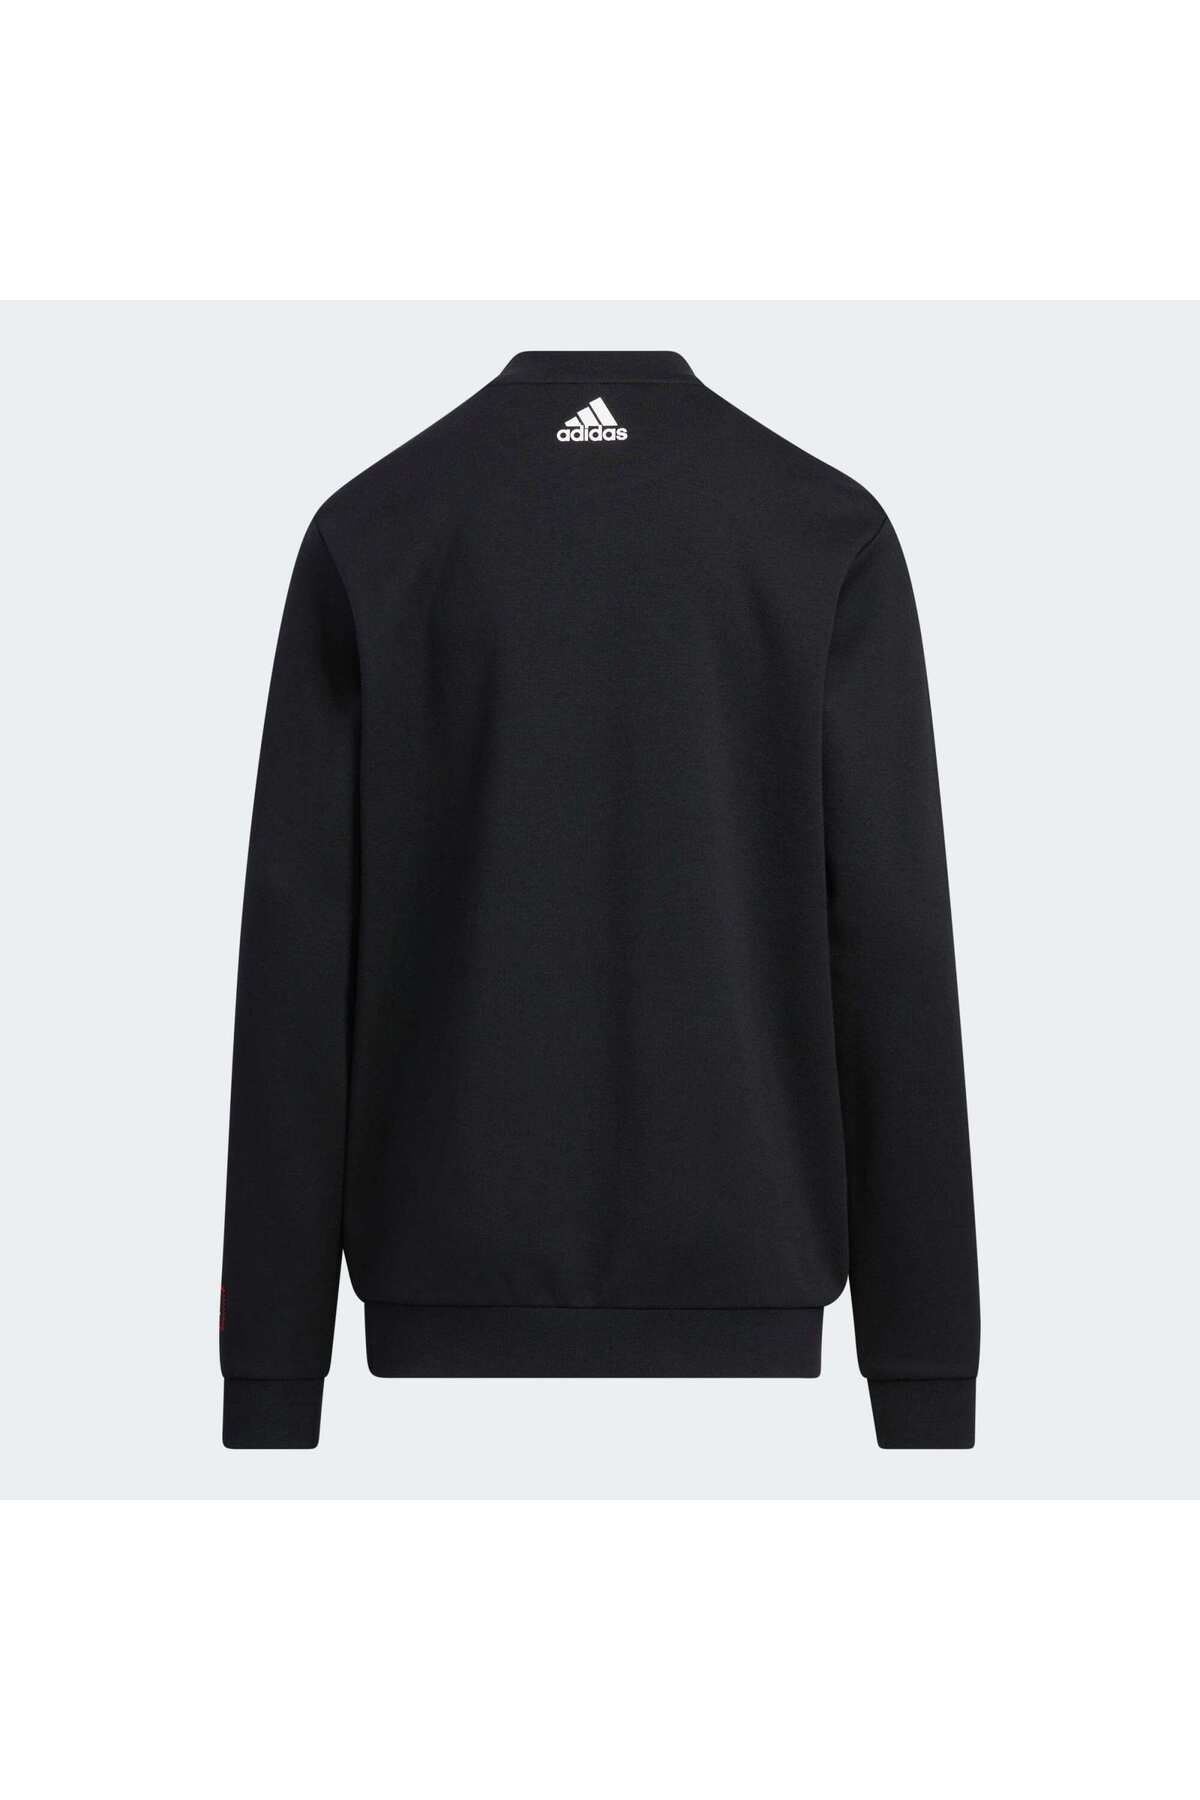 adidas Knit Crew Çocuk Siyah Sweatshirt (HZ0216)